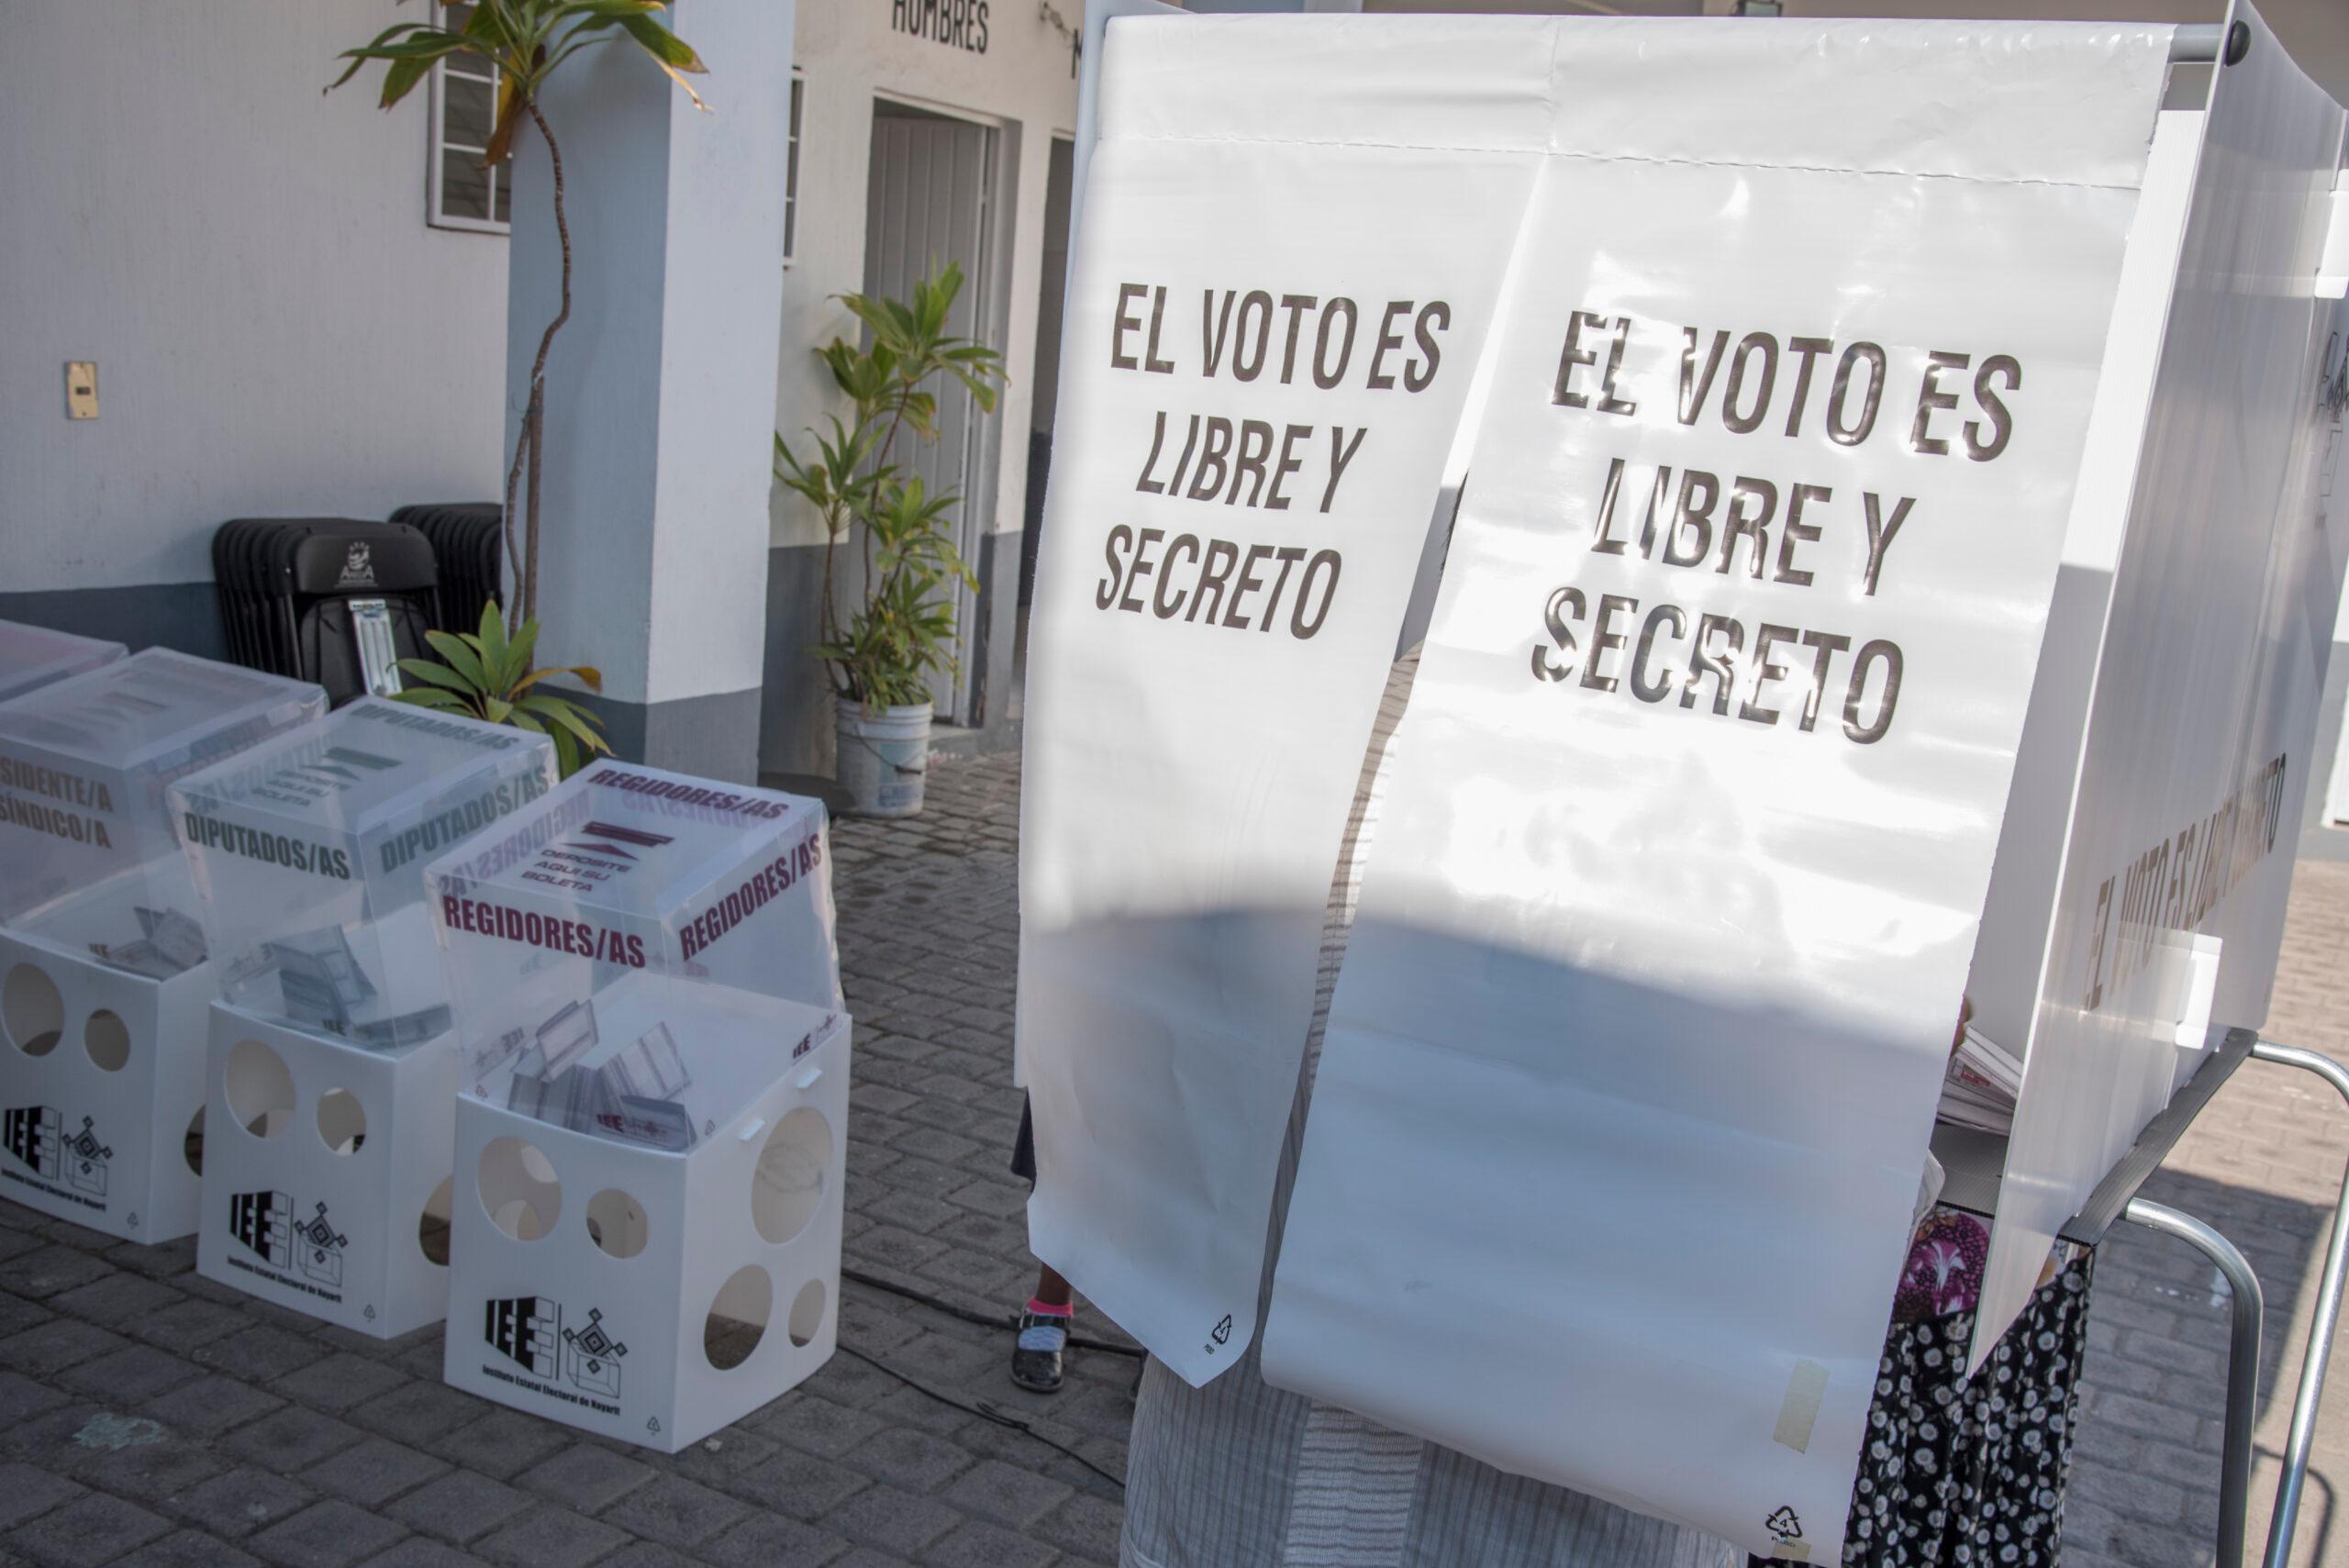 Trampas electorales: Edomex concentra la mayor parte de denuncias por irregularidades